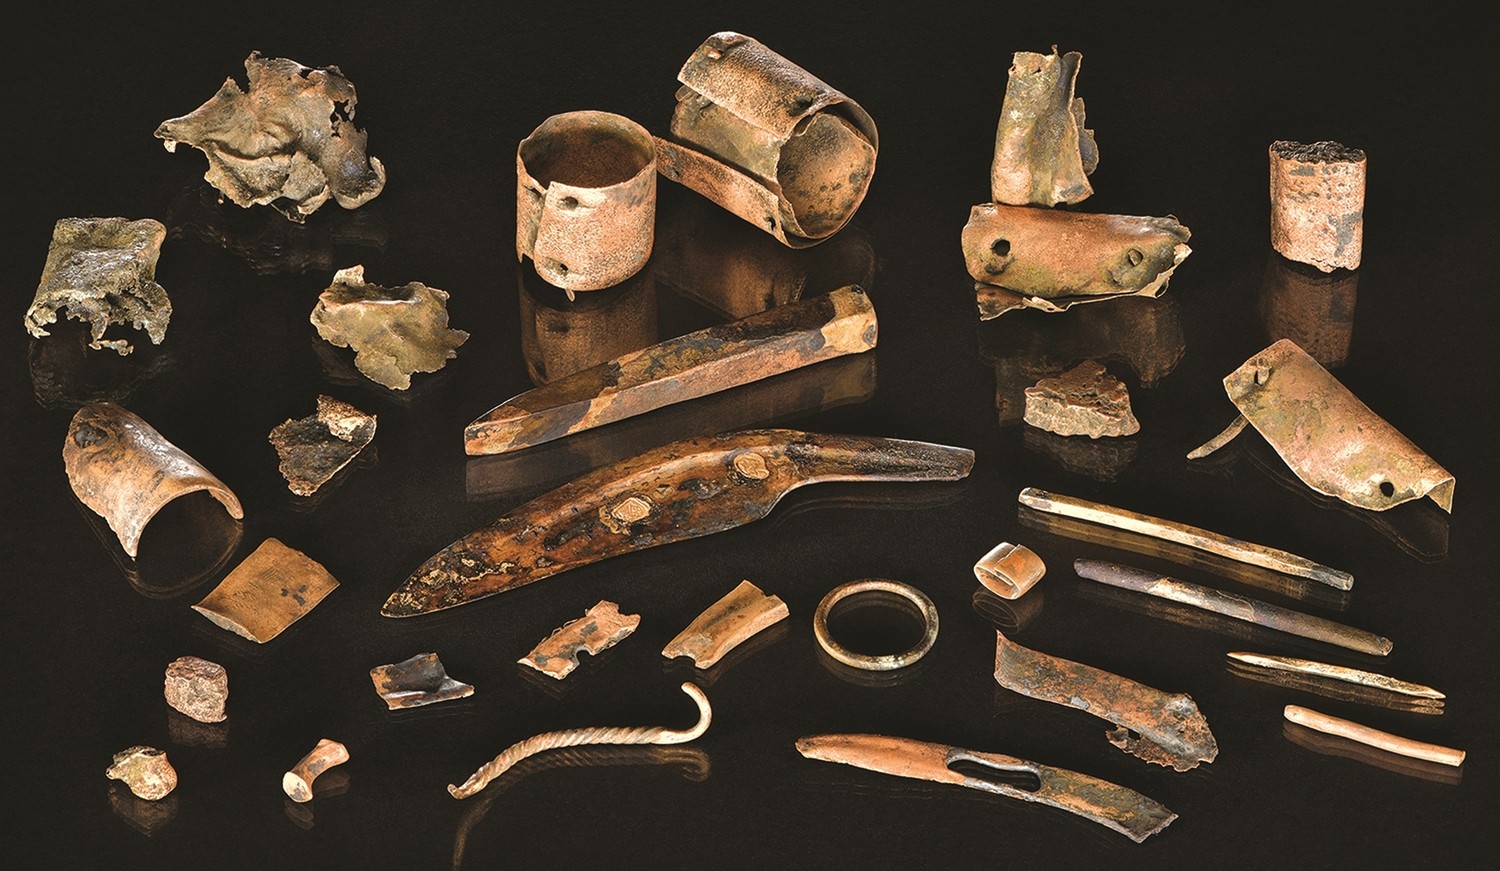 O pequeno kit de ferramentas inclui pedaços de bronze e ferramentas que seriam usadas na vida cotidiana, como um cinzel, um furador com o cabo de bétula ainda preservado, uma faca e uma pequena espada (Foto: Volker Minkus/Universidade de Göttingen)